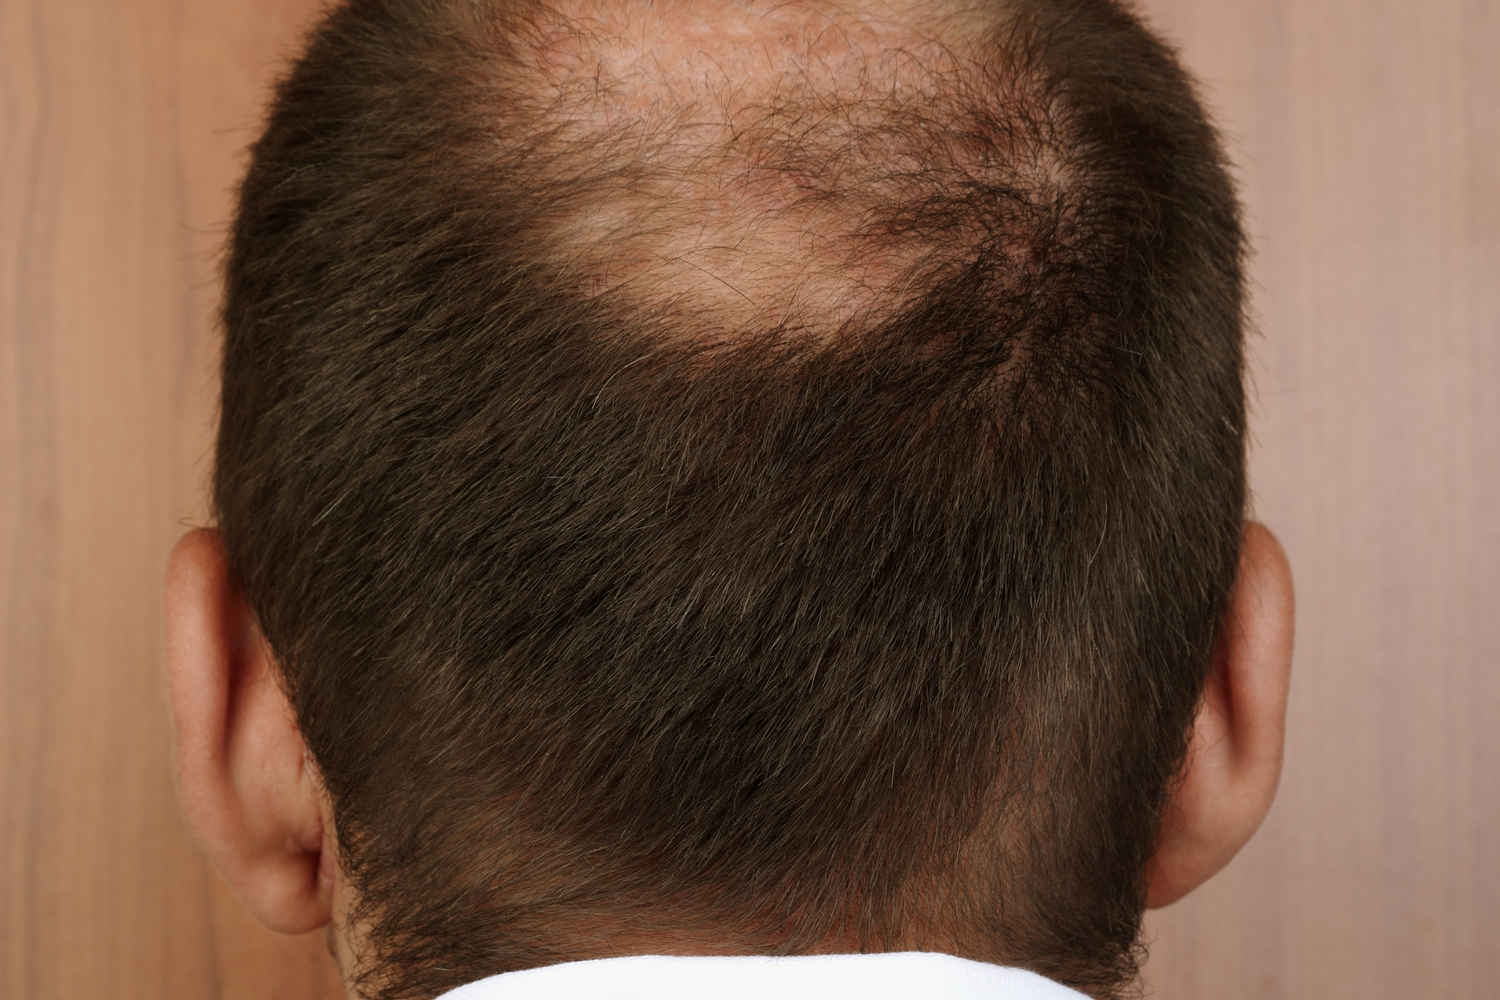 Haartransplantation & Spenderbereich: So erholt sich der Hinterkopf schneller